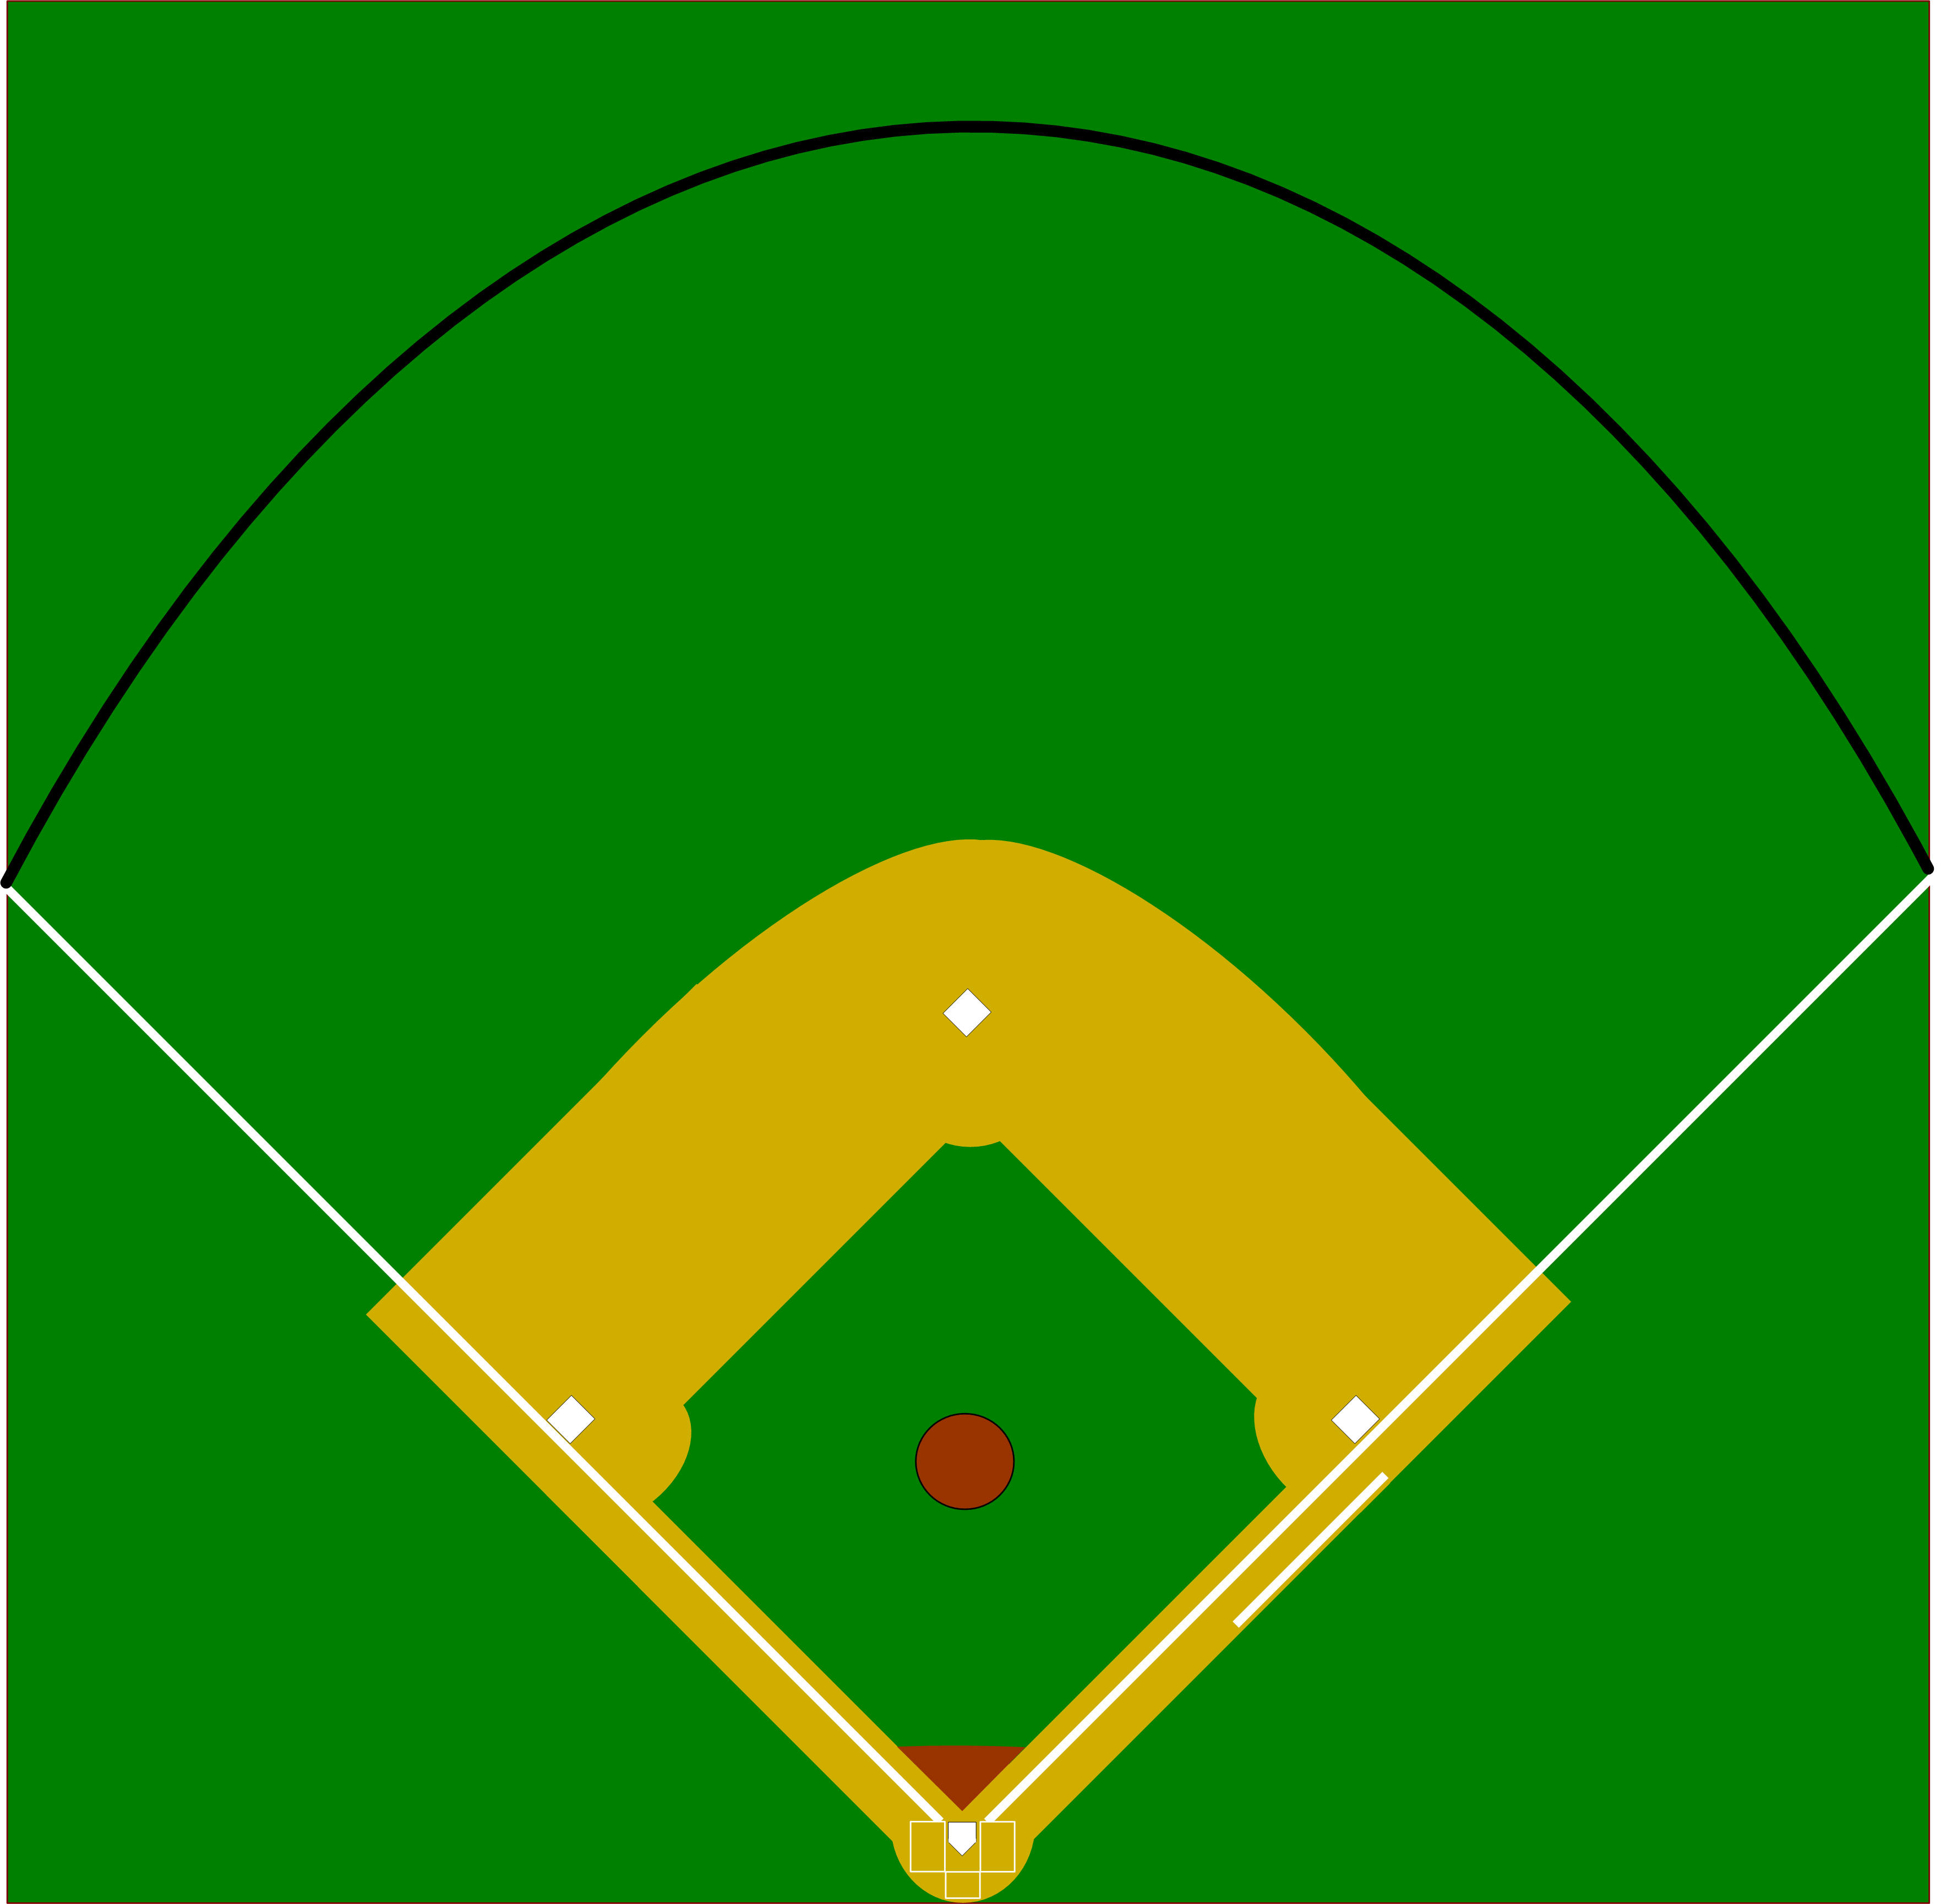 baseball-diamond-outline-clipart-best